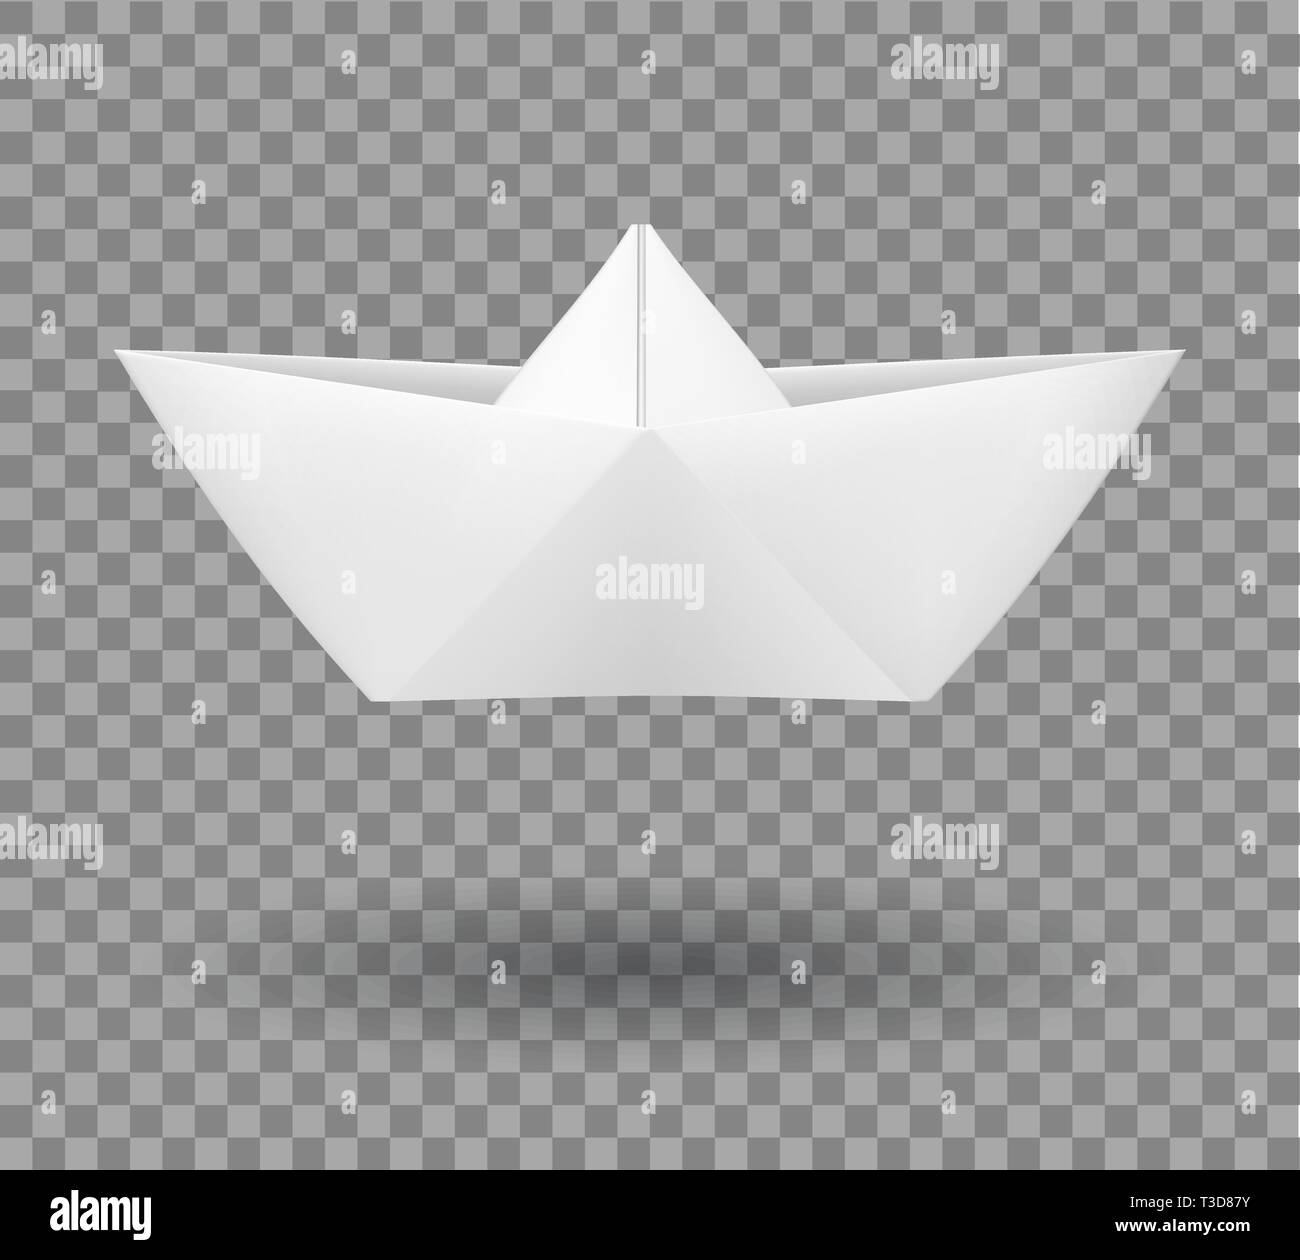 Realistische gefaltetes Papier Boot in origami Art. Vector Illustration Stock Vektor